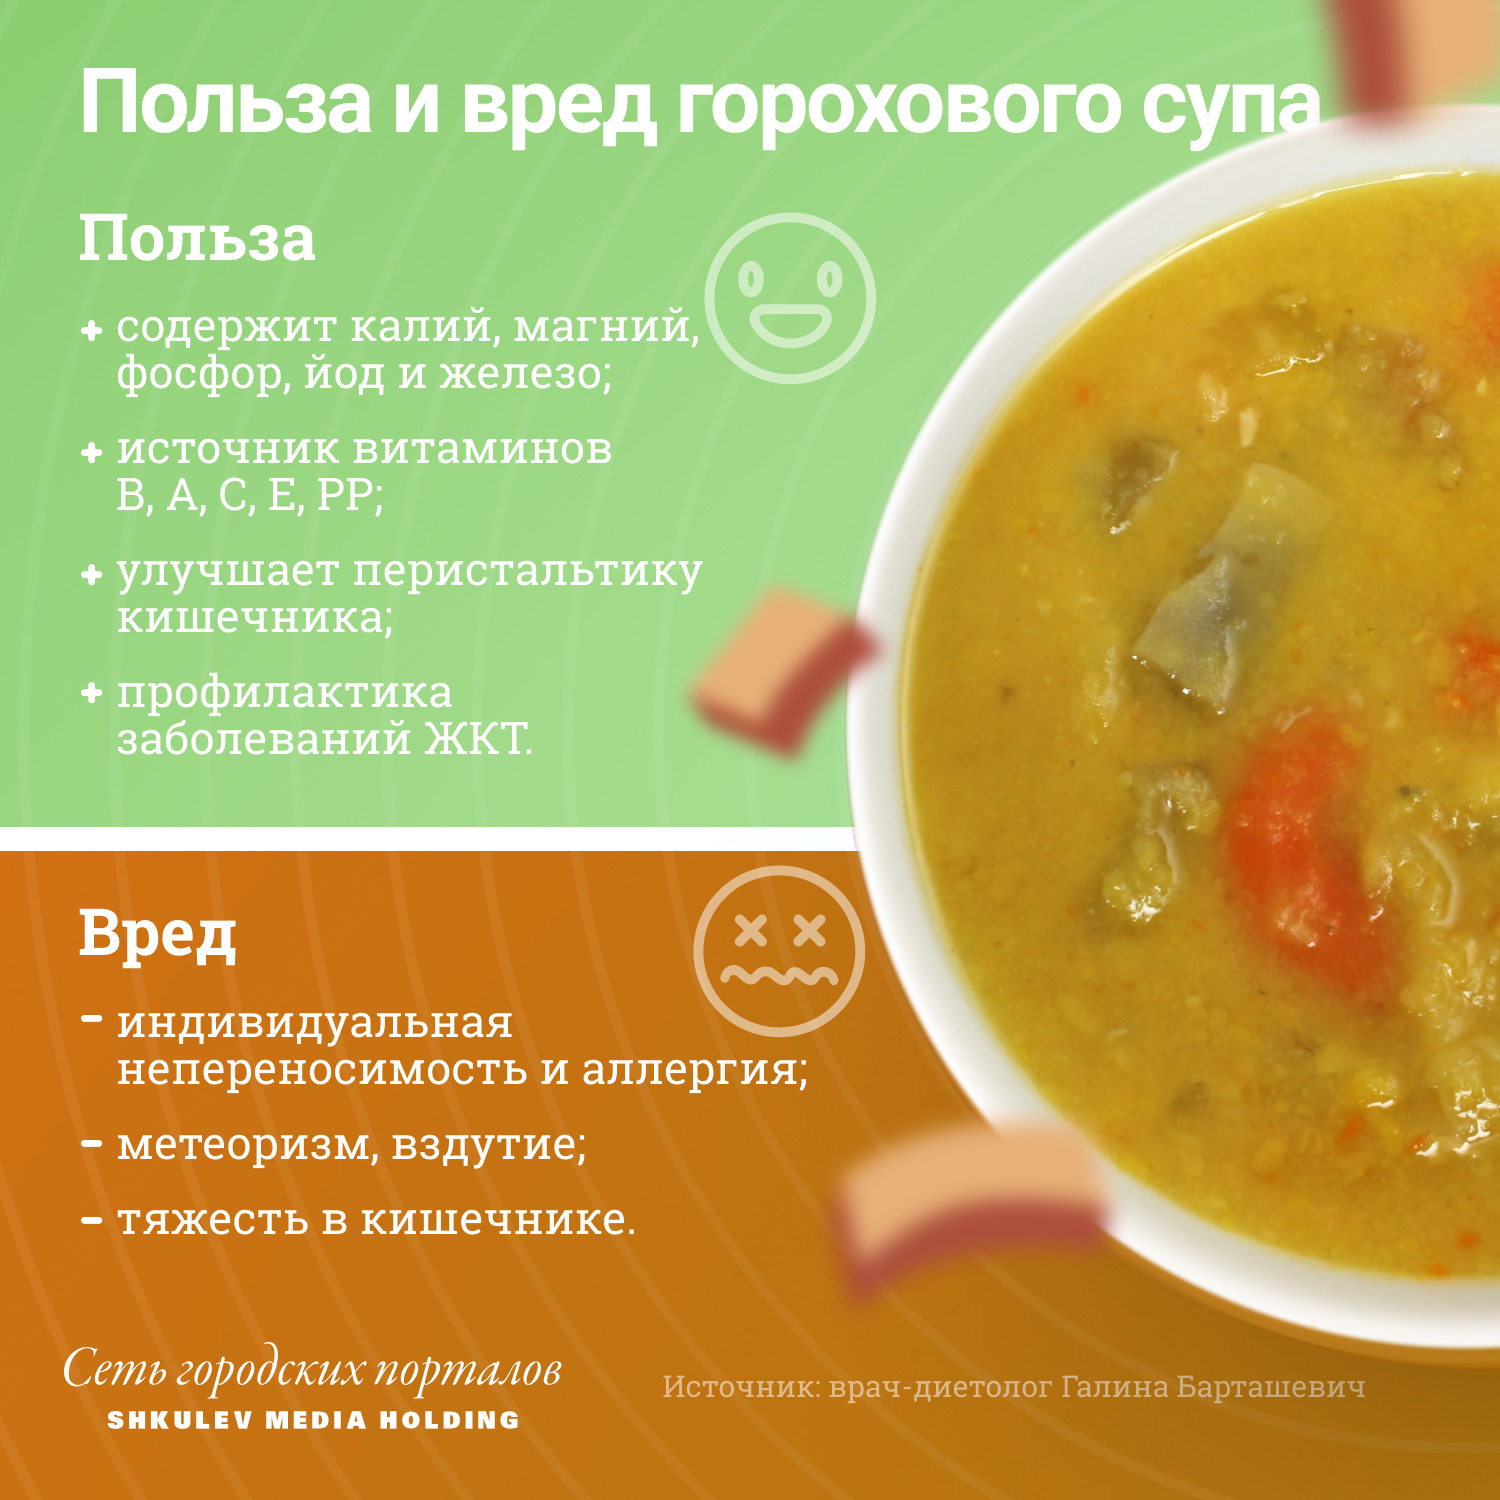 Вот что полезного и вредного в гороховом супе